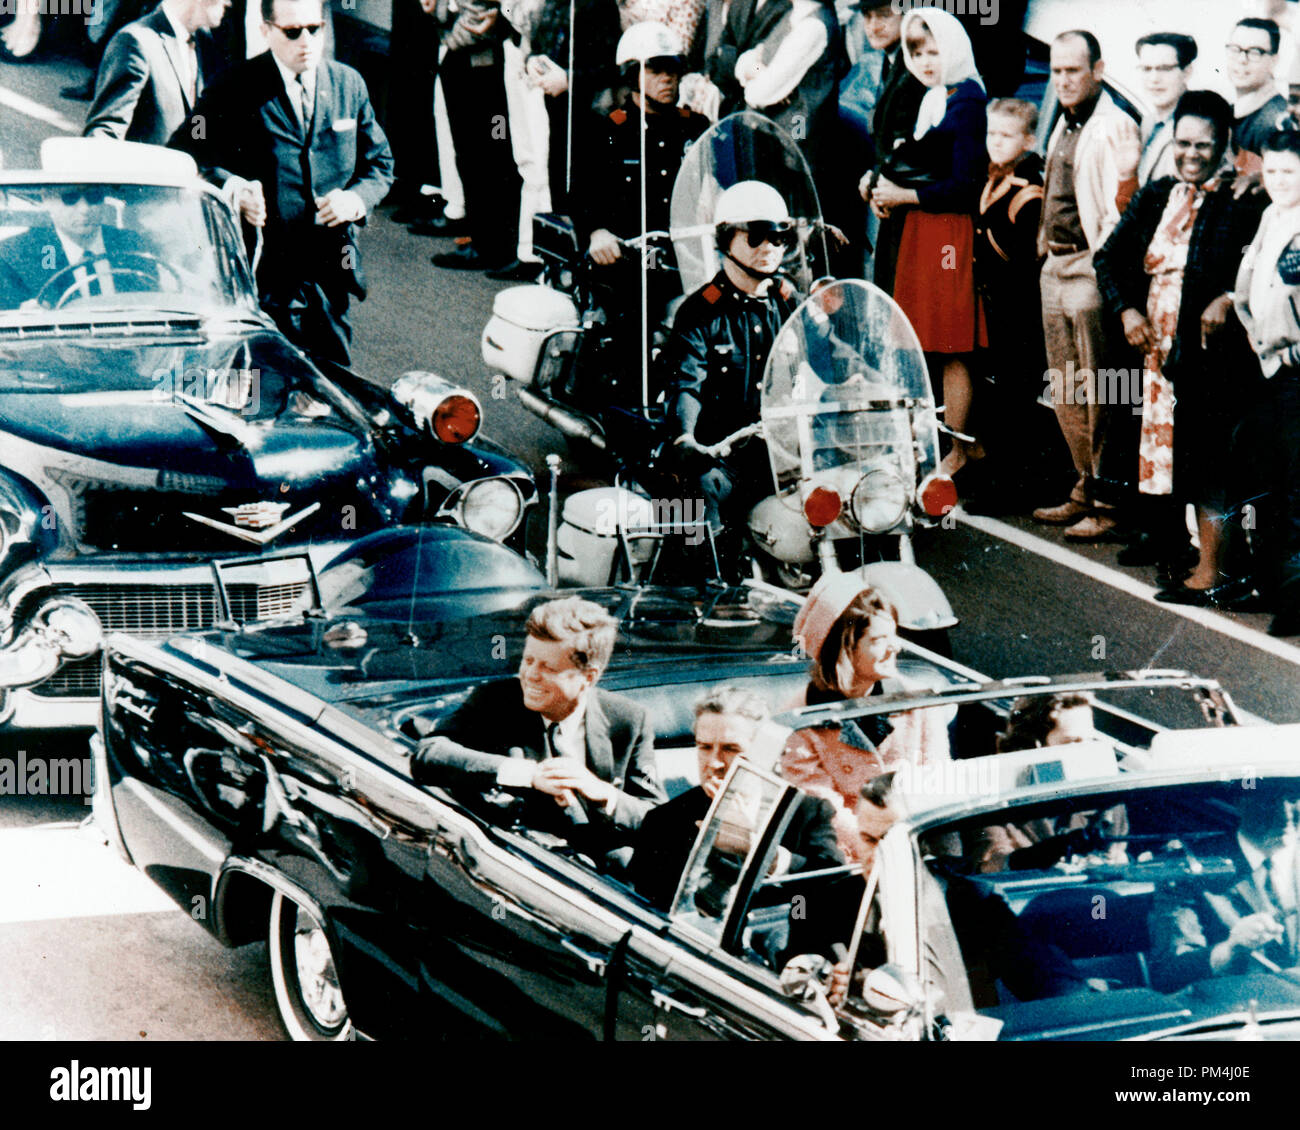 Le président John F. Kennedy, Jacqueline Kennedy, Nellie Connally, et le gouverneur John Connally, quelques instants avant l'assassinat de Dallas, Texas, le 22 novembre 1963 Reference #  1003 Fichier 452THA Banque D'Images